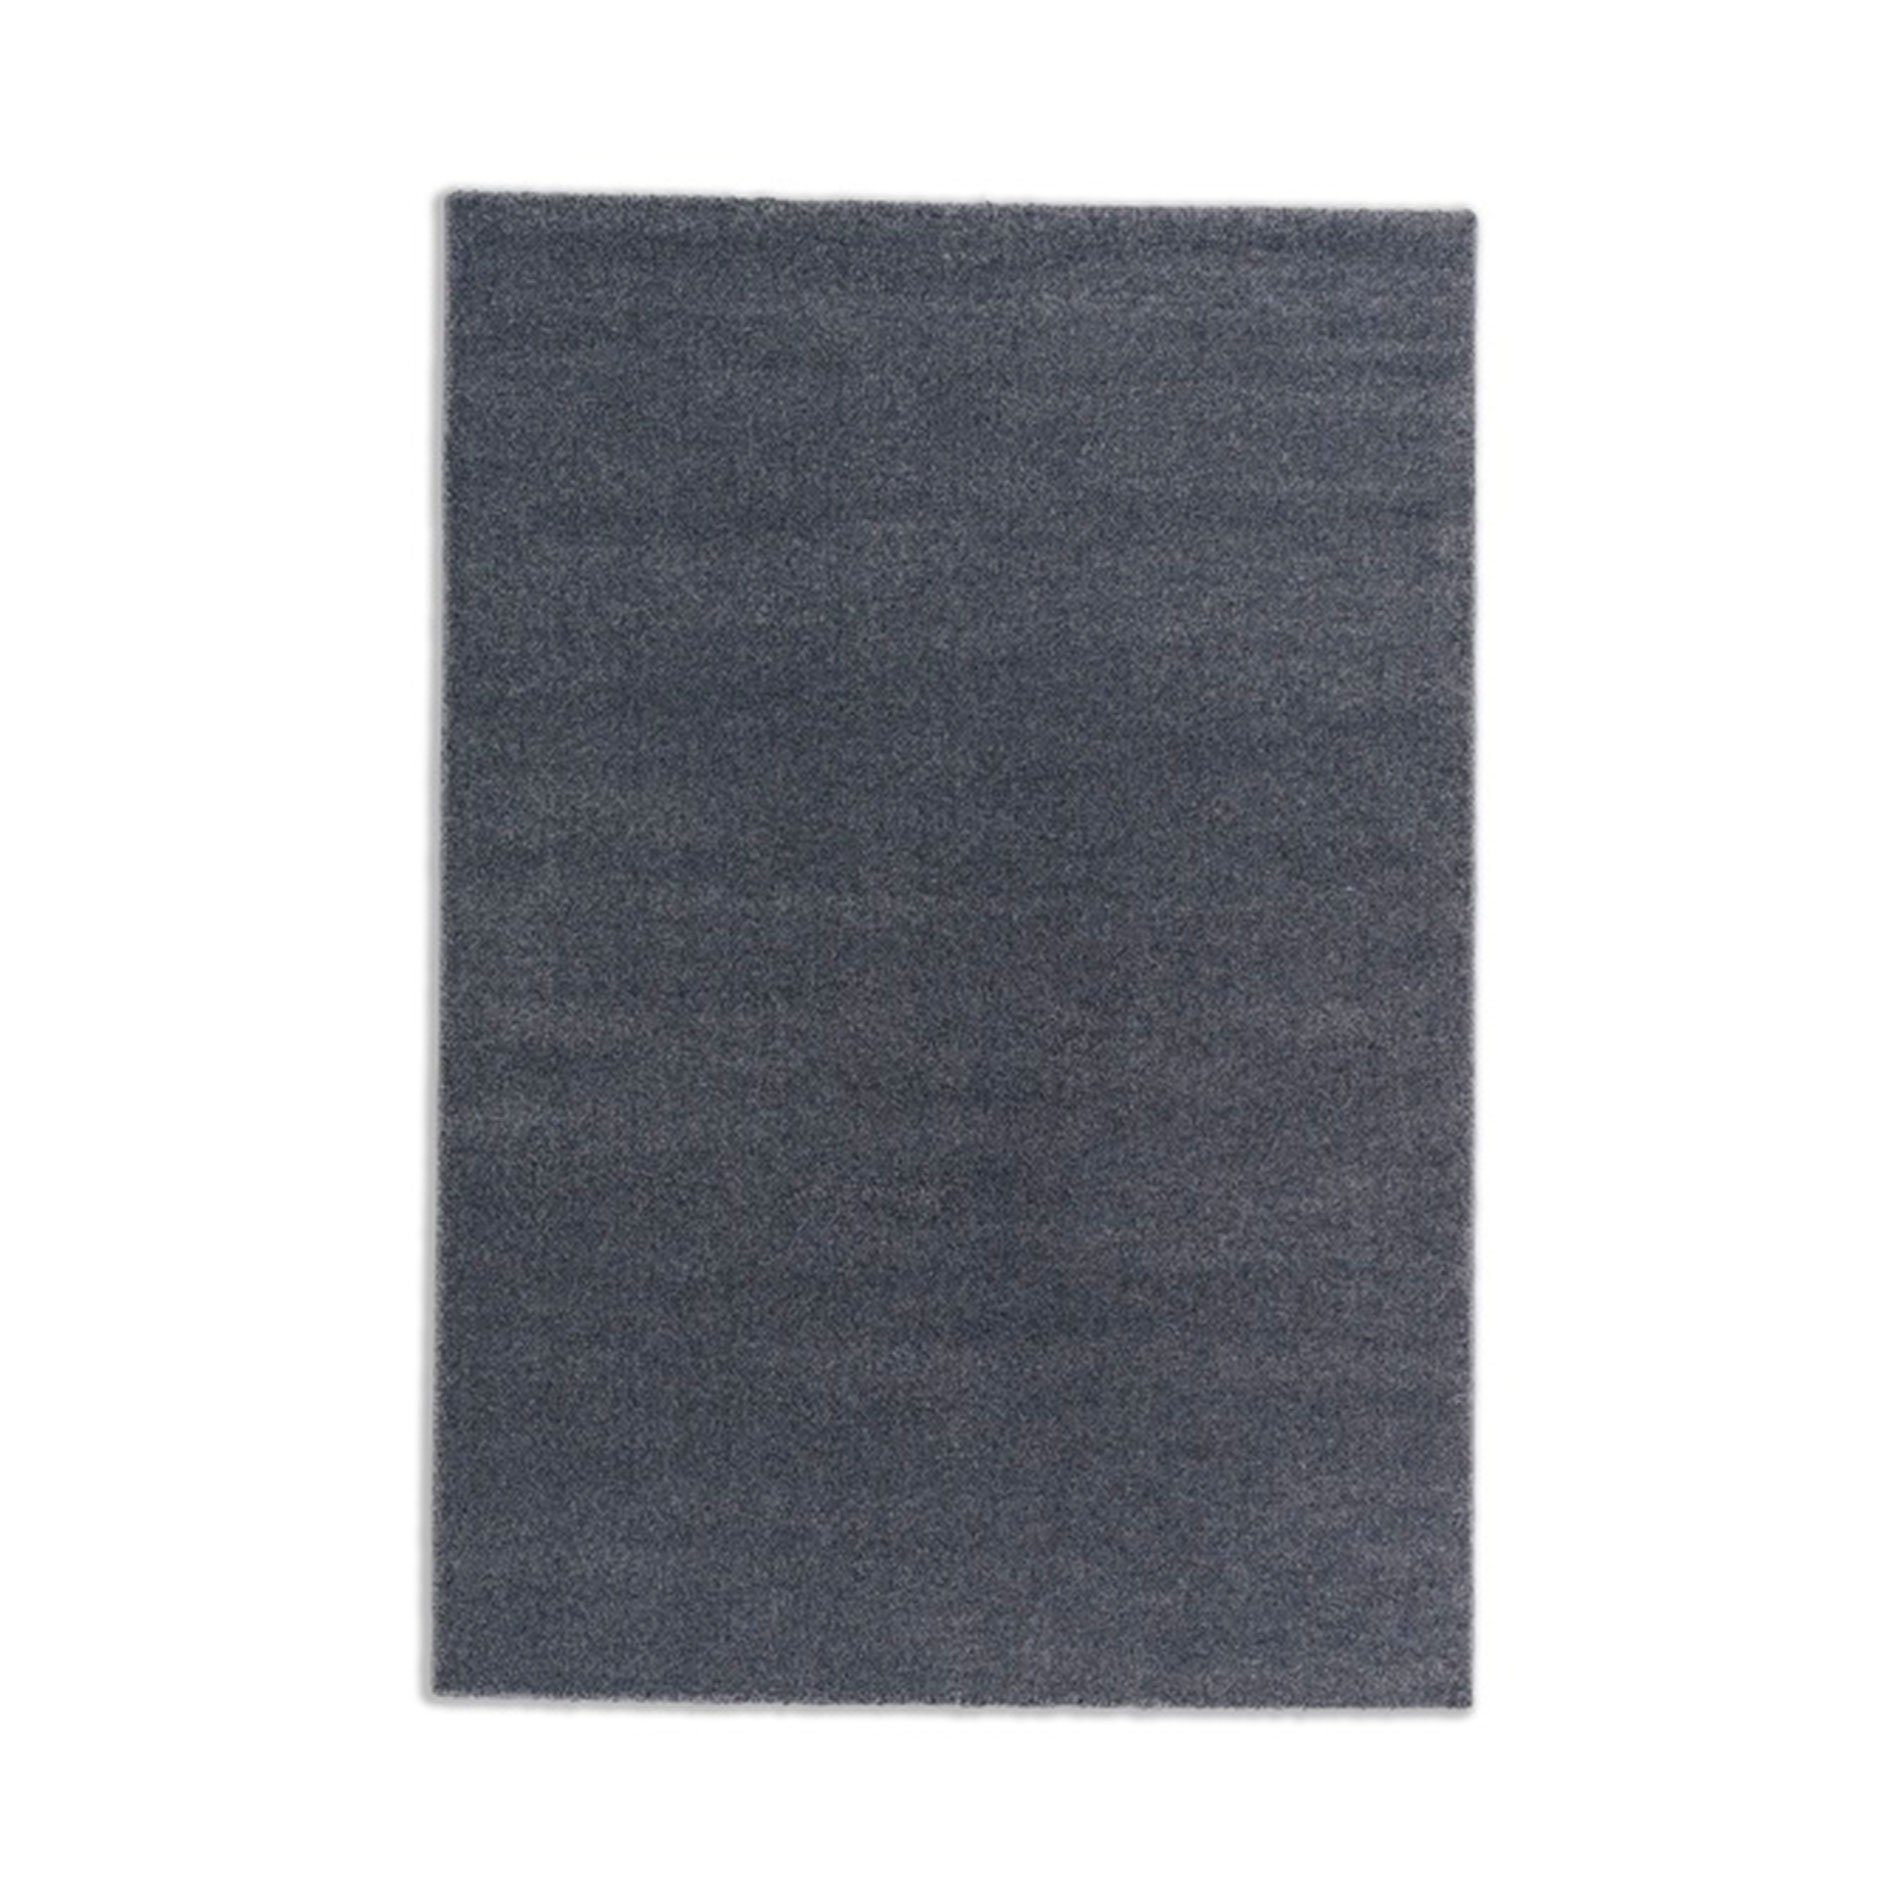 Astra „Pure“ Teppich in der Farbe Anthrazit in frontaler Ansicht.